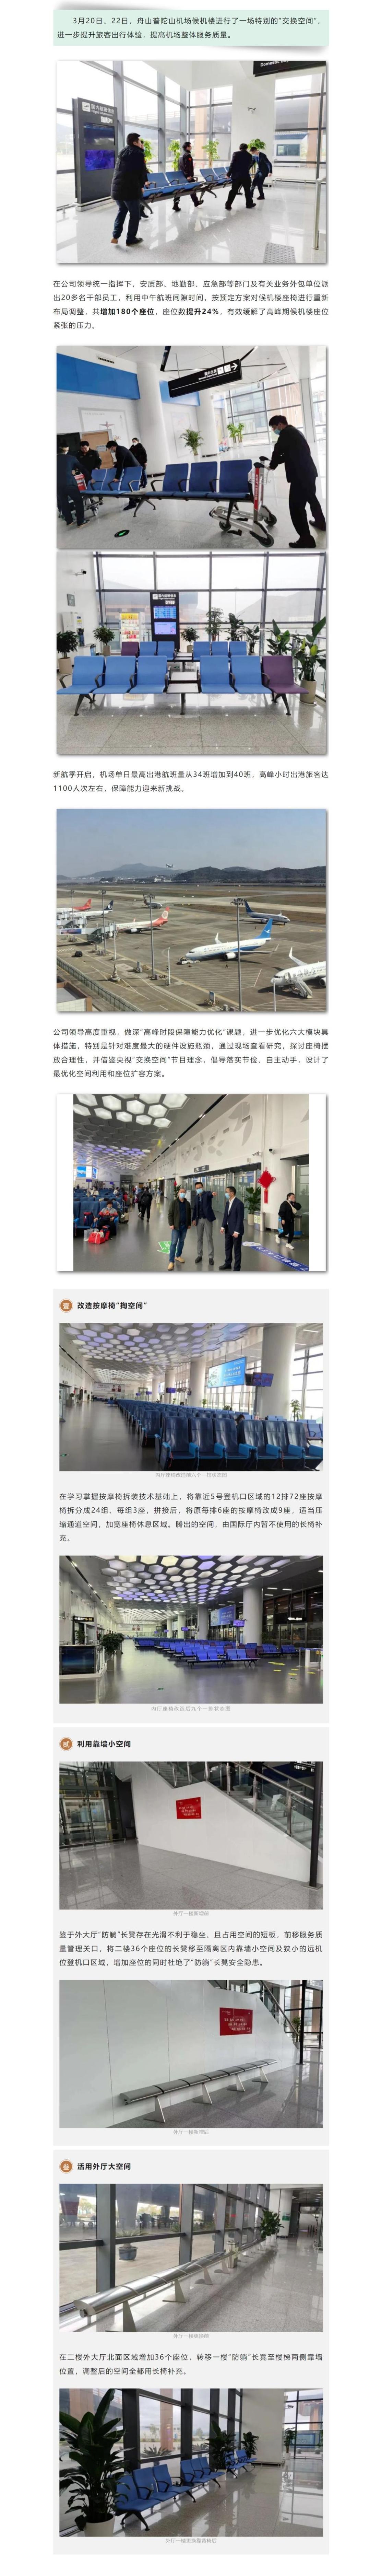 舟山普陀山机场候机楼的“交换空间” ——自己动手增加180个座位.jpeg